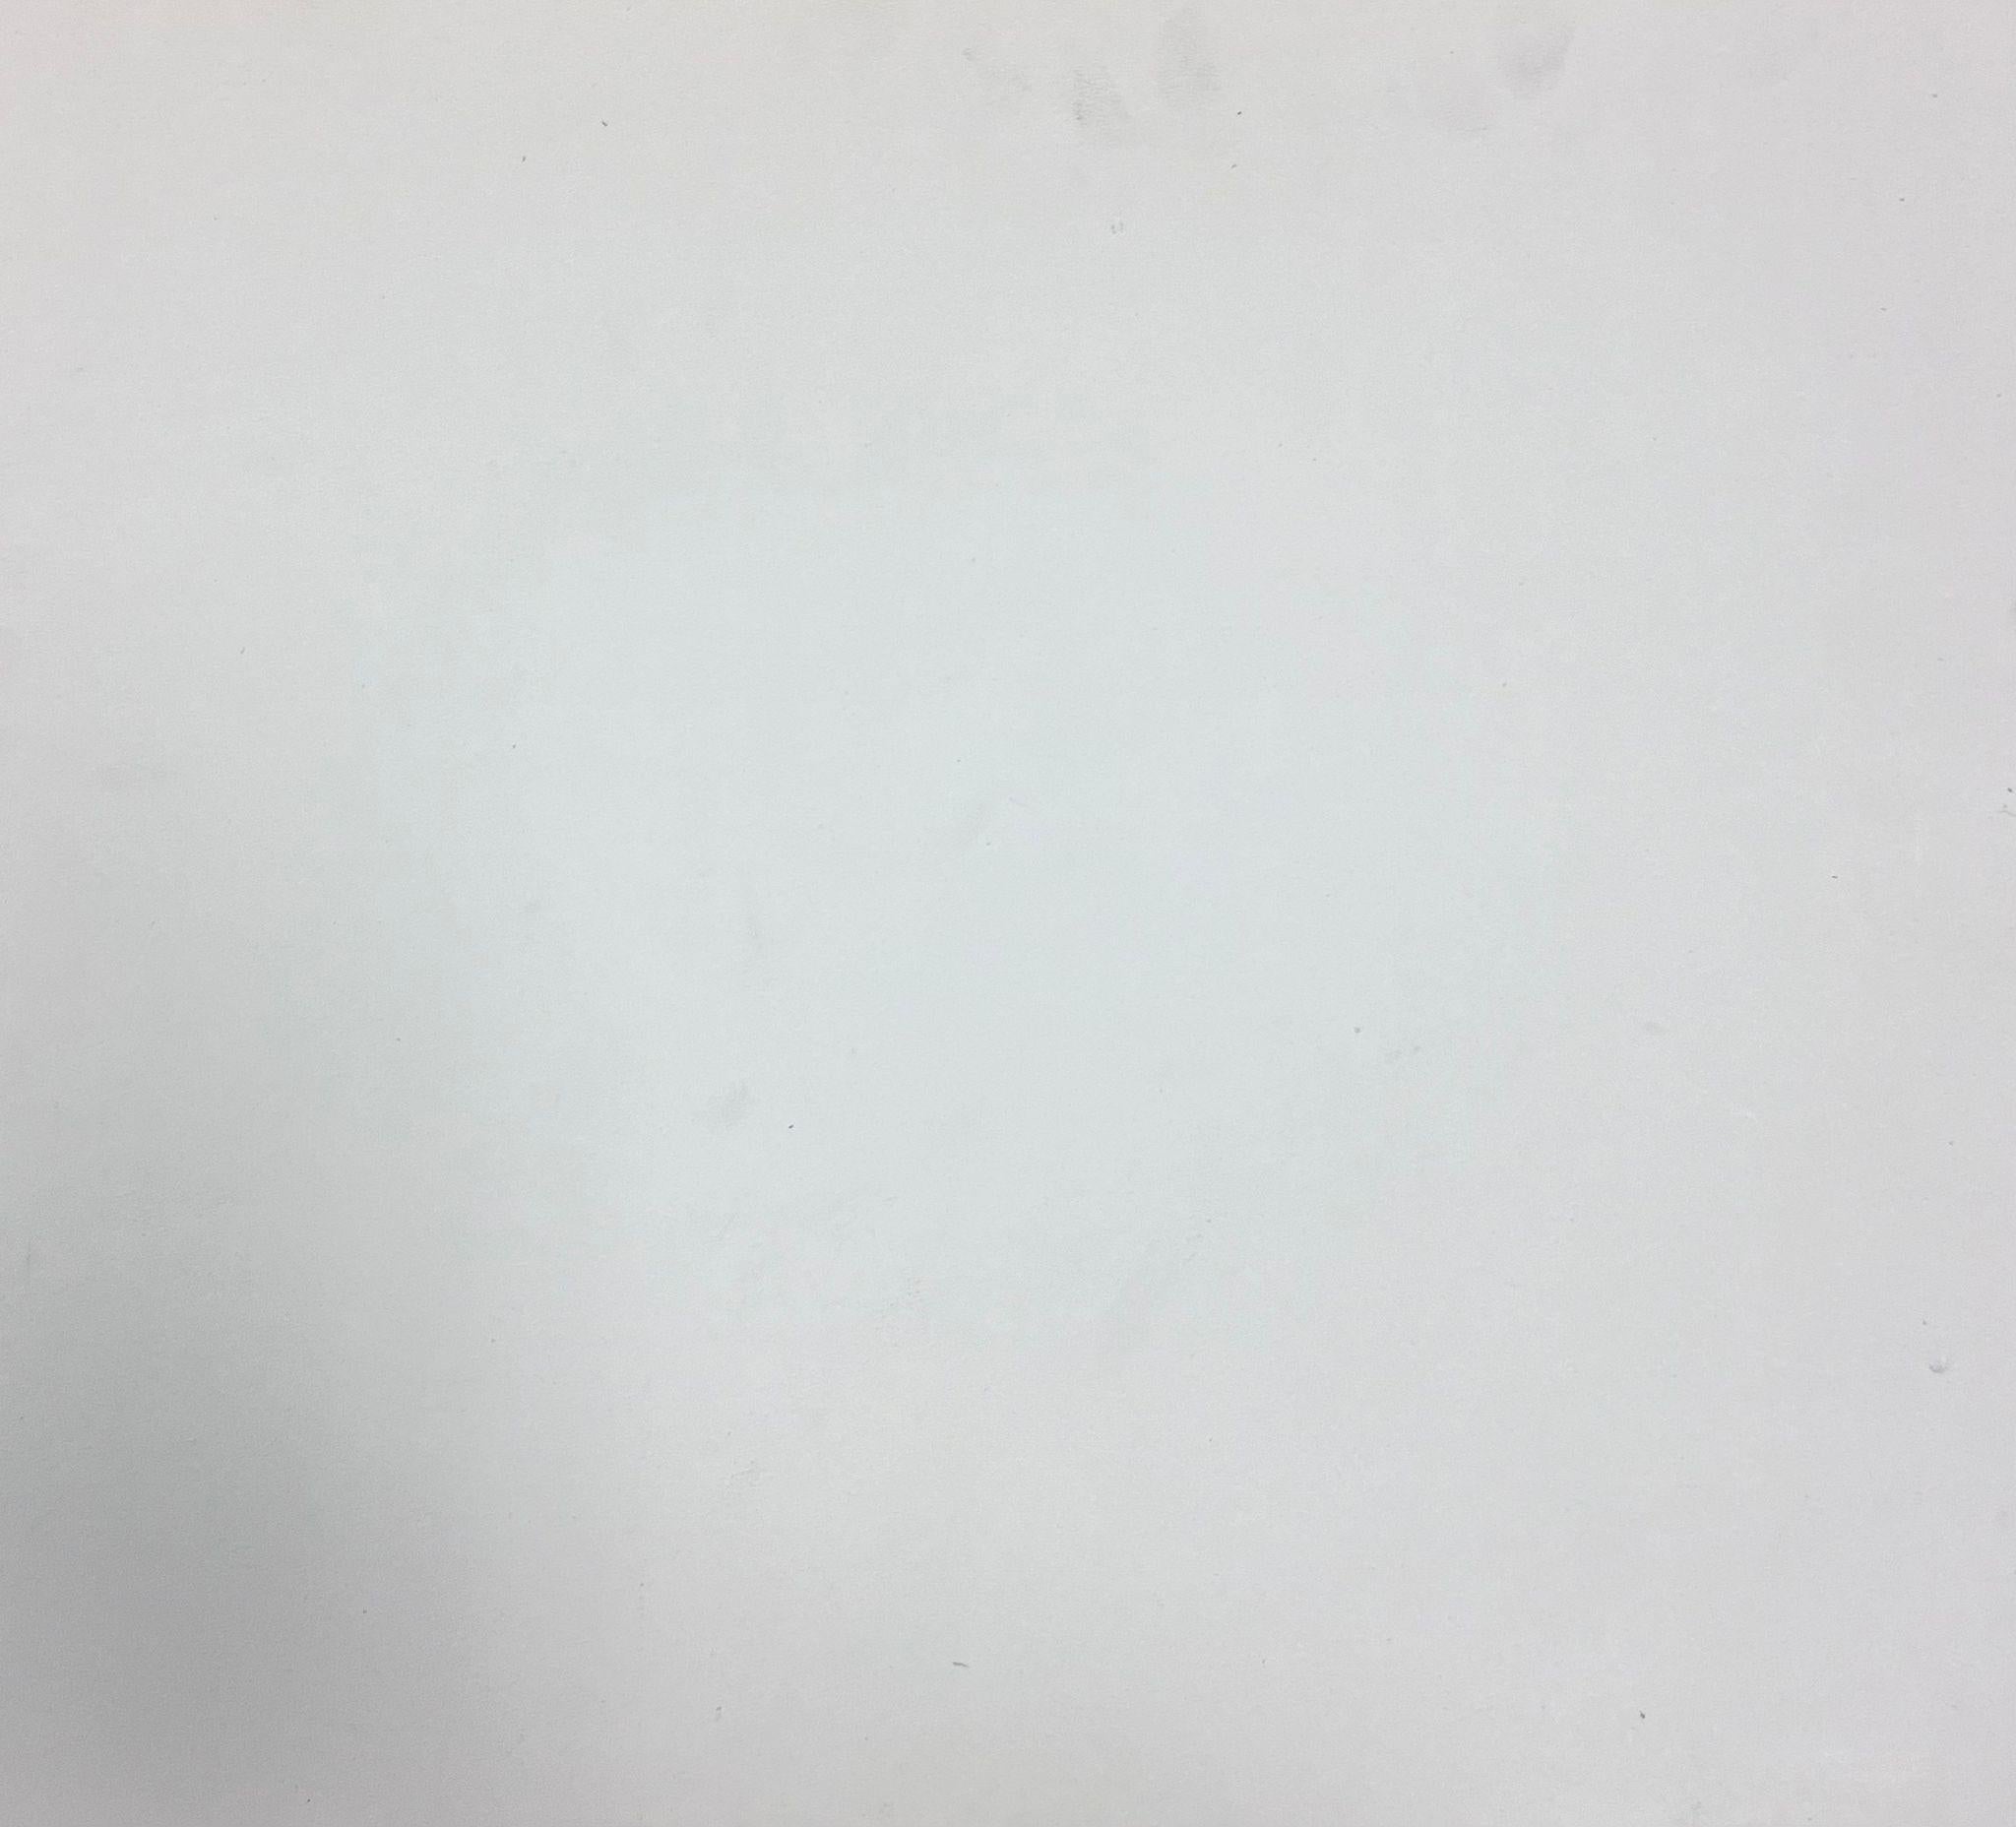 Paysage français
par Guy Nicod
(Français 1923 - 2021)
aquarelle sur papier d'artiste, non encadrée
peinture : 15 x 17 pouces
provenance : succession d'artistes, France
état : très bon et sain